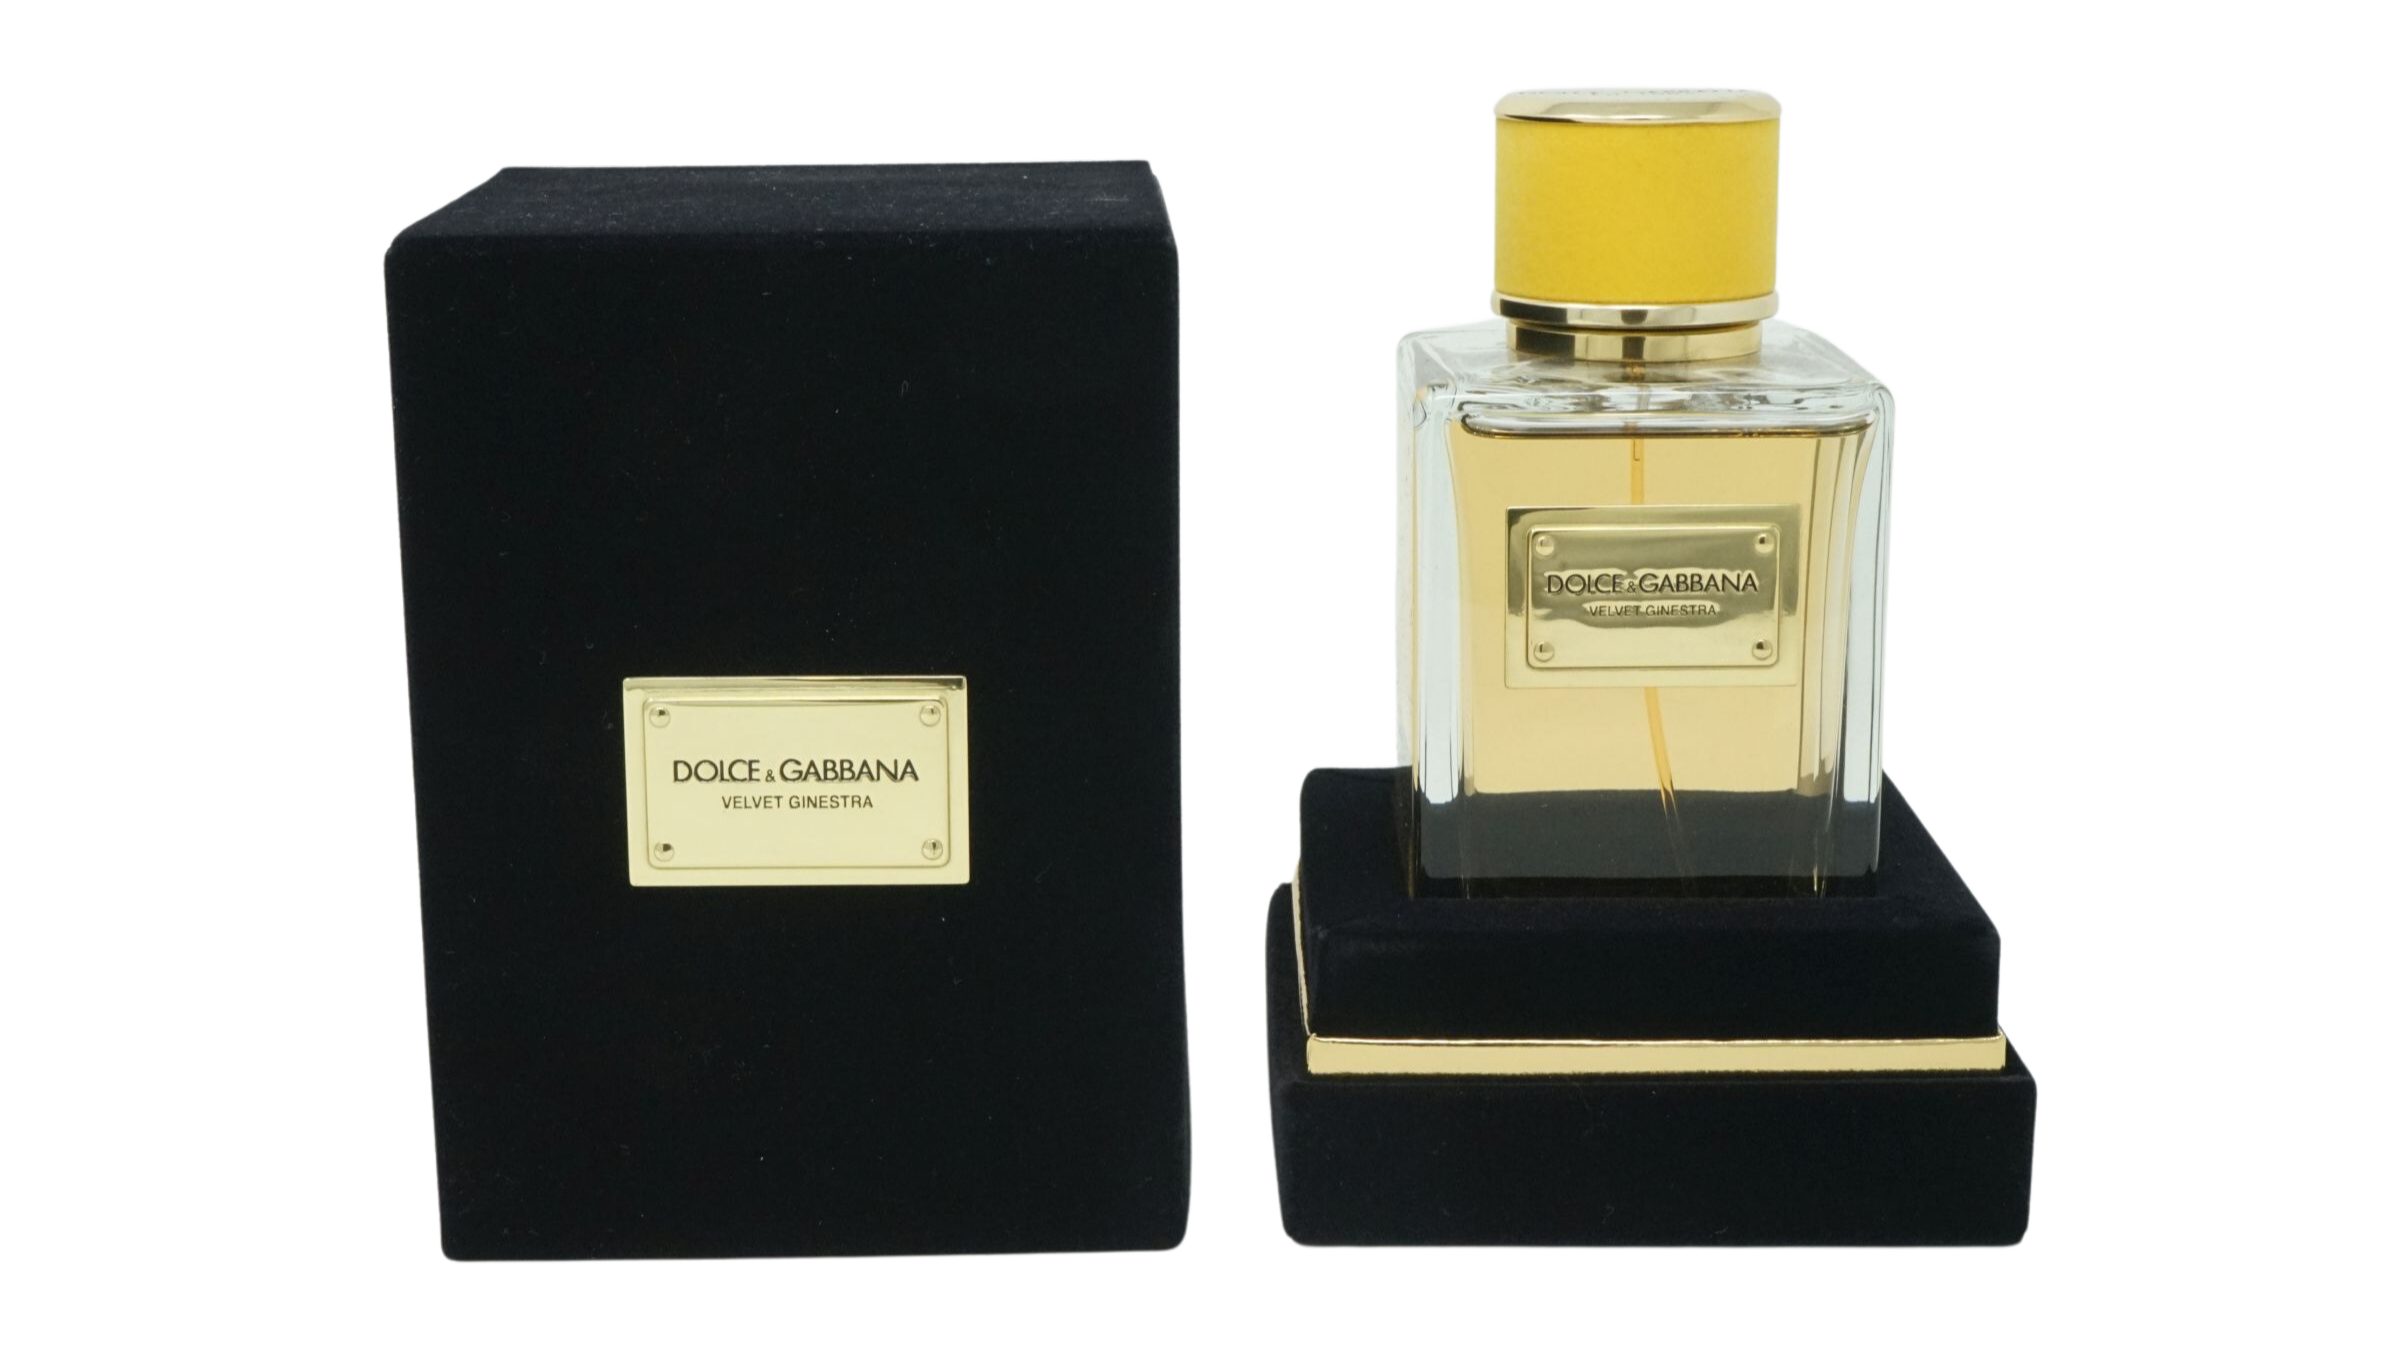 DOLCE & GABBANA Eau de Parfum parfum Ginestra Gabbana Dolce 150ml & Eau Spray Velvet de